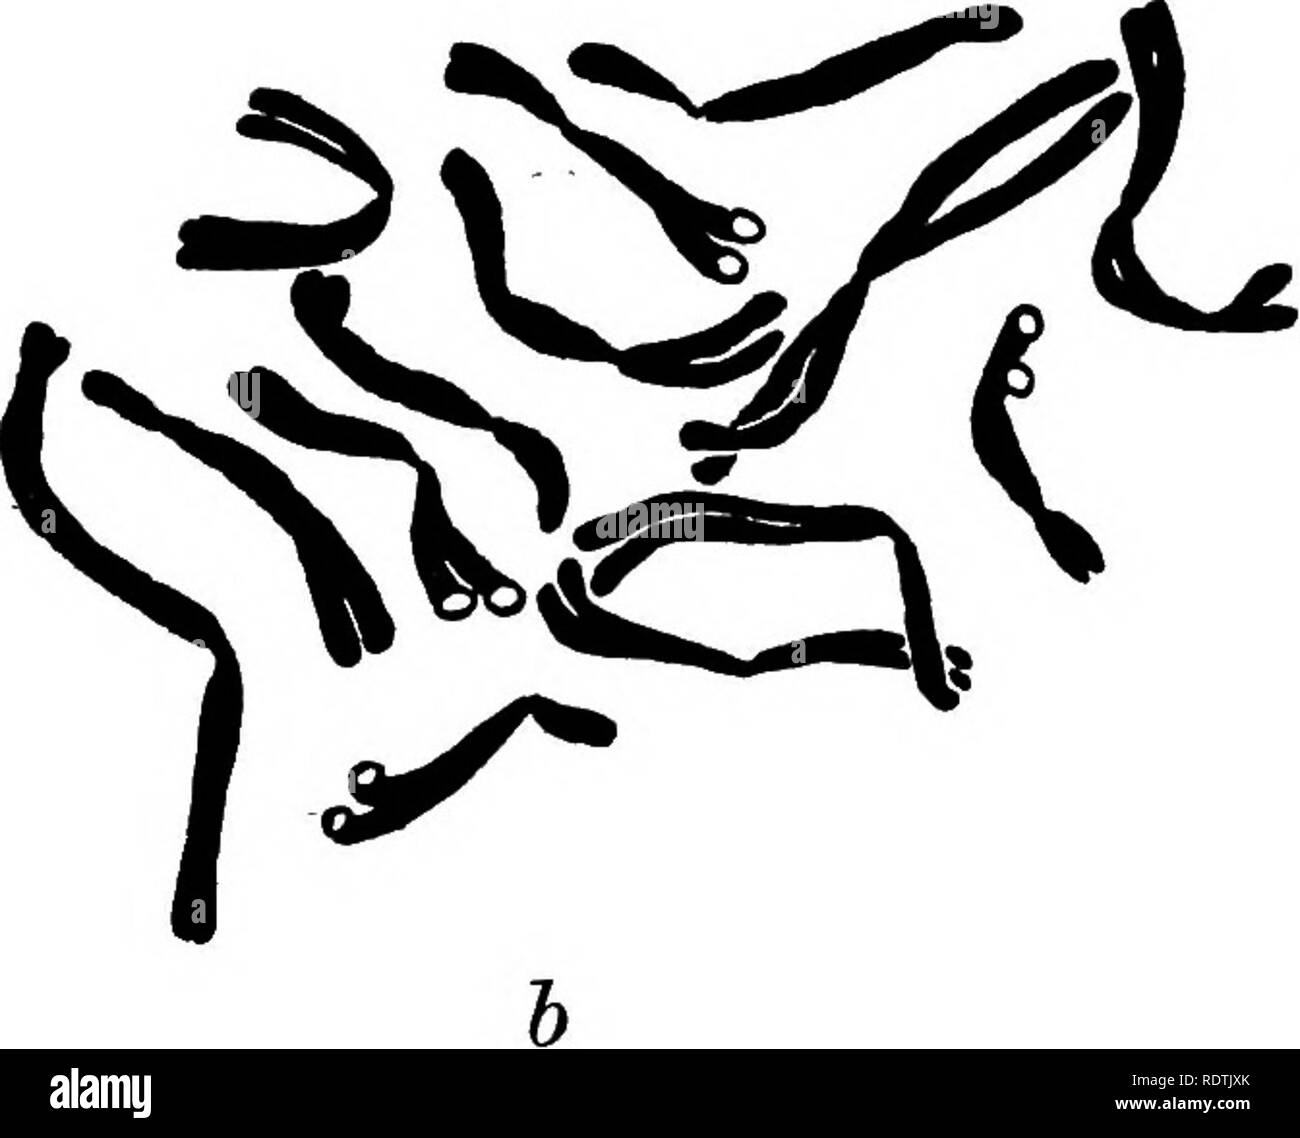 . [Miscellaneous Nachdrucke auf Botanik]. Botanik. a. Abb. 1. Somatische Metaphasen von Pisum sativum von root Tipps von (a) eine kultivierte Vielfalt, (6) Th. 10, (c) eine fruchtbare F^Anlage von Herzog von Albany x Th. 7. Die Chromosomen sind 4 bis 5 fi Lange, (a und c x 4875, 6 x 4800.) gezeichnet von Dr0. D. in Darlington. Eine Prüfung der Zeichnungen zeigen, wie eng diese Kontaktstellen Die chiasmata ähneln, die eindeutig auf die diplotän in jenen Arten, die in dieser Phase gewonnen werden können sind zu beachten. "Chiasma" wird hier verwendet: "das Auftreten einer einzelnen Exchange aus. Bitte beachten Sie, dass t Stockfoto